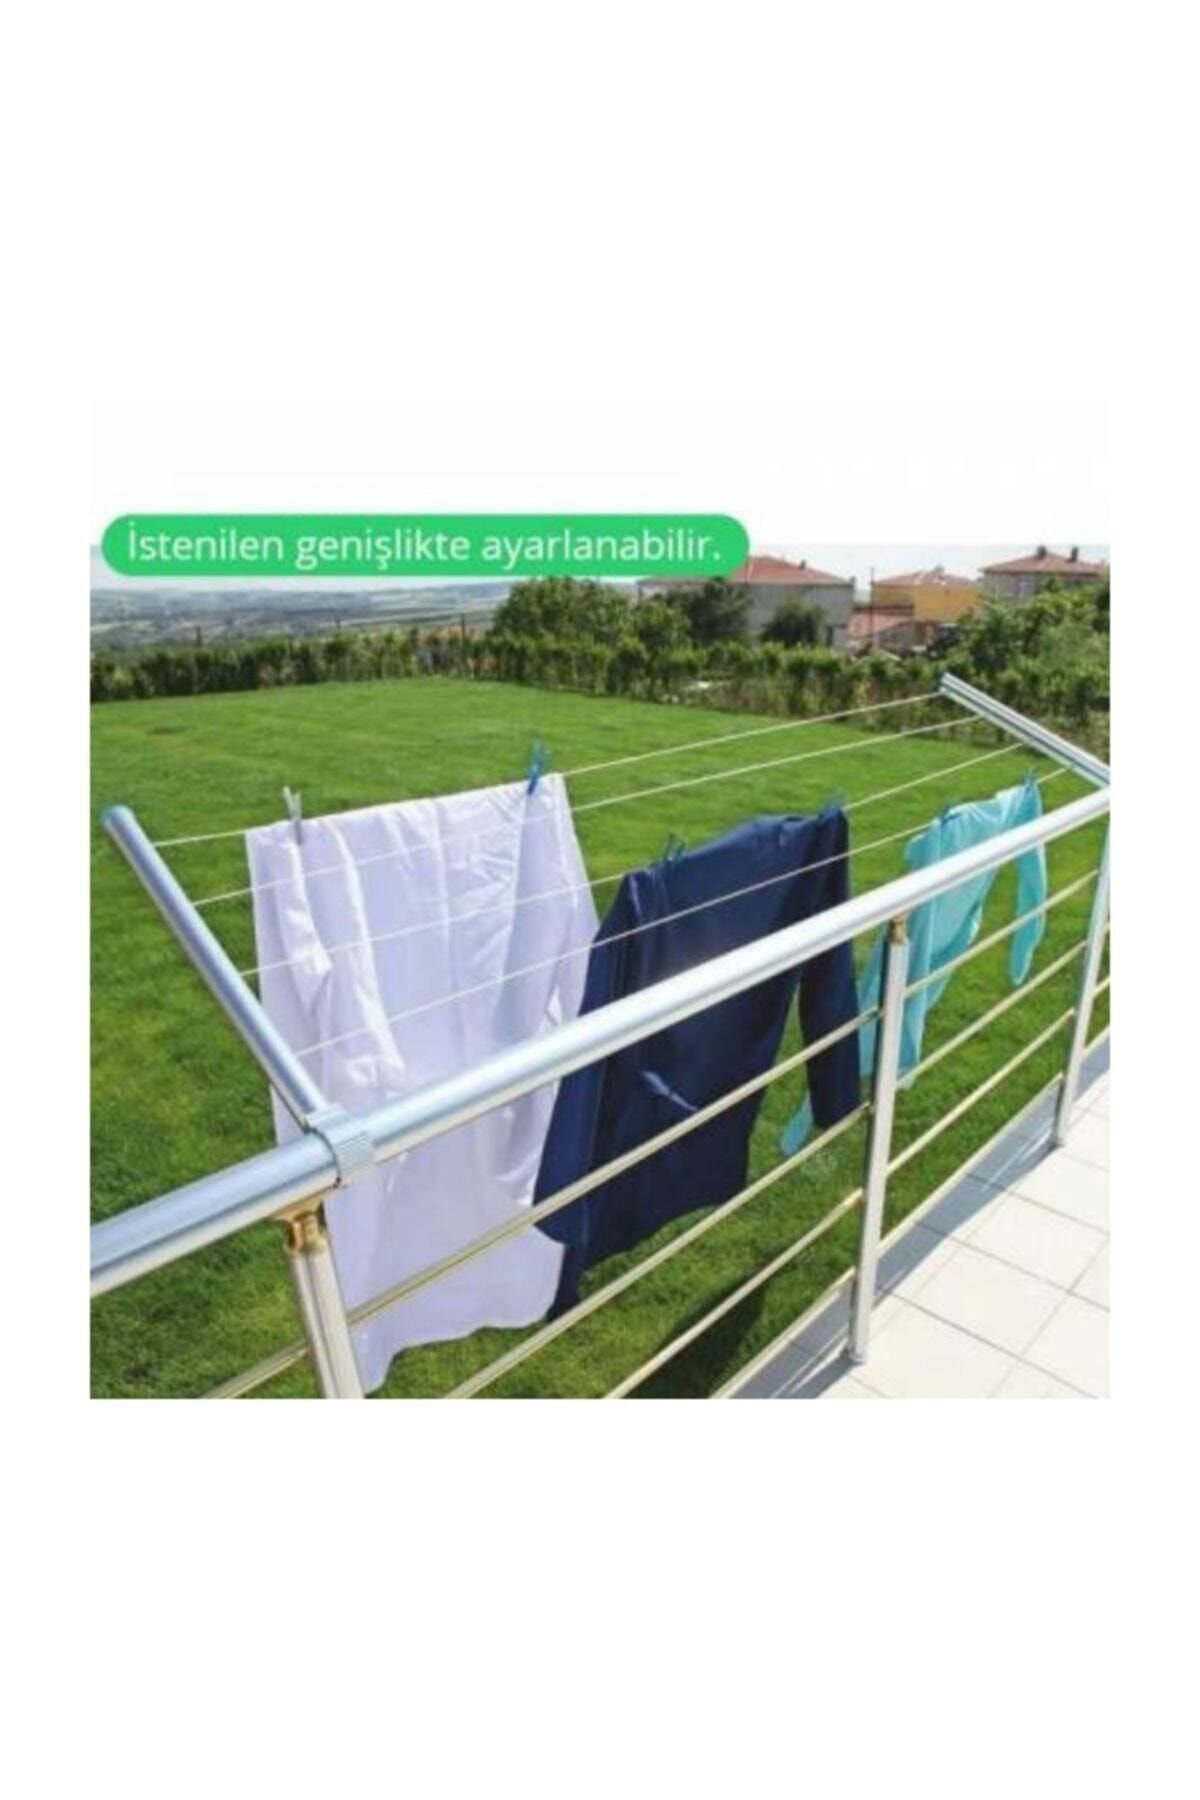 bieney Alüminyum Balkon Çamaşır Kurutma Askısı Balkon Askılığı